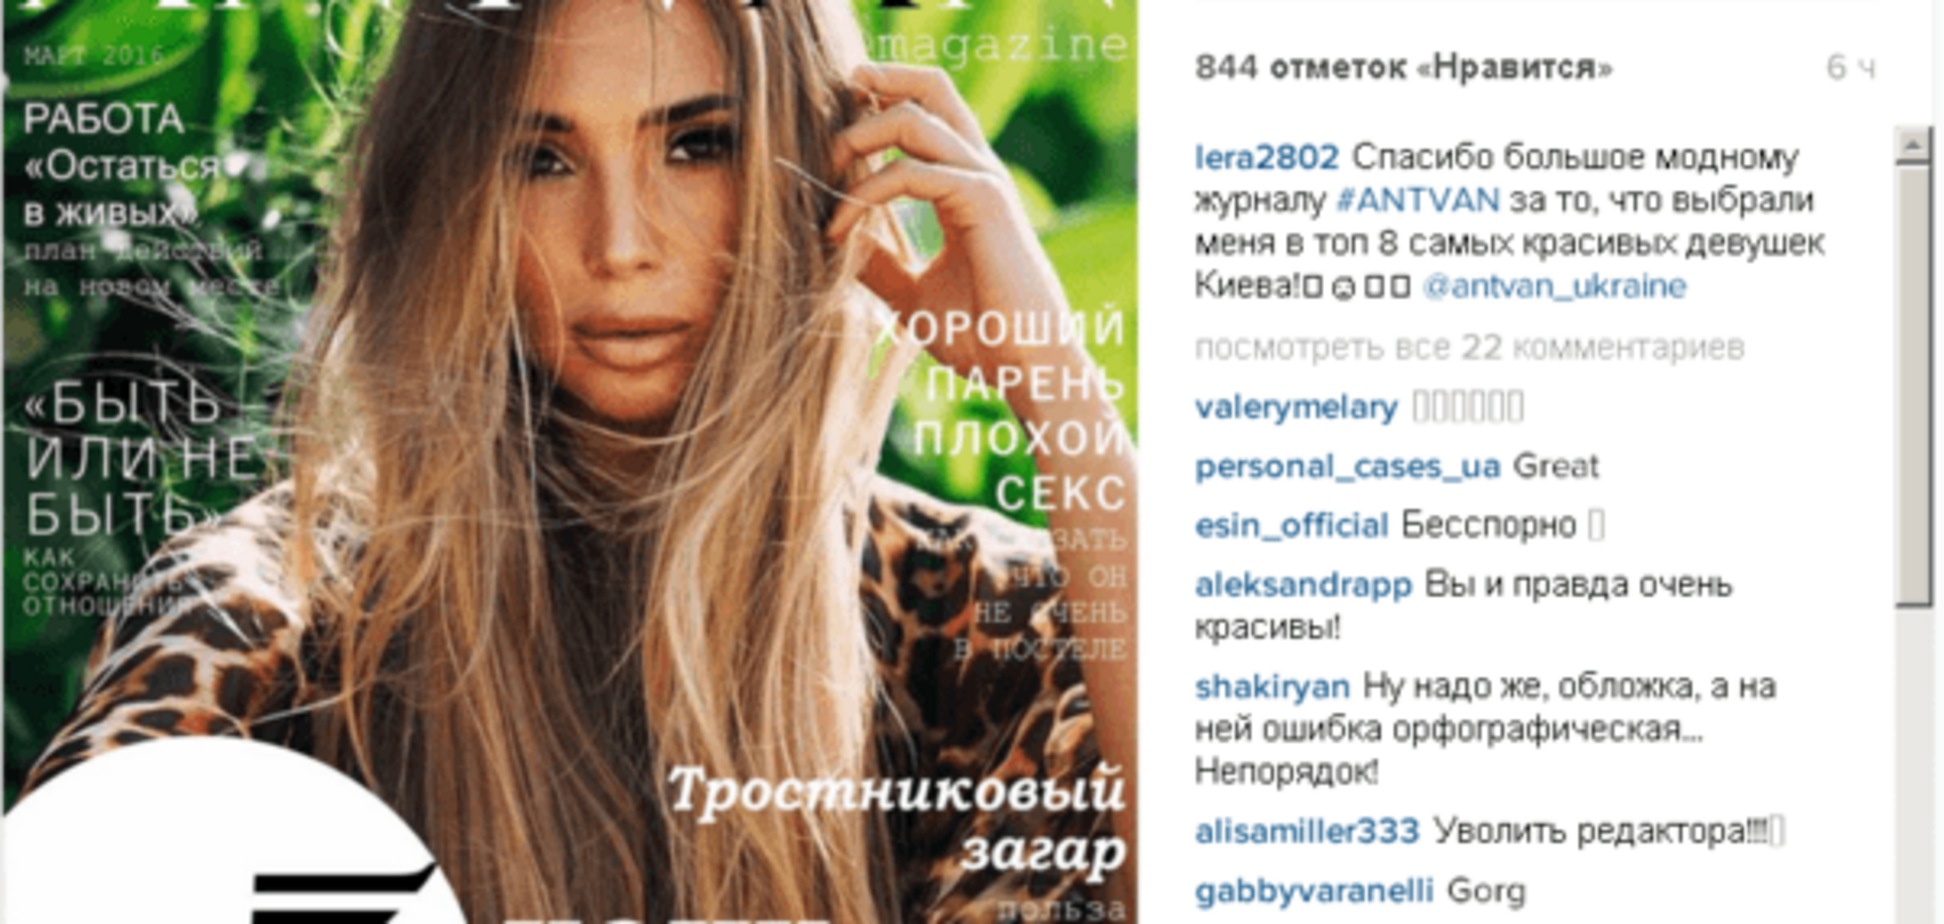 Сексуальная жена вратаря сборной Украины возглавила топ-8 самых красивых девушек Киева: роскошные фото